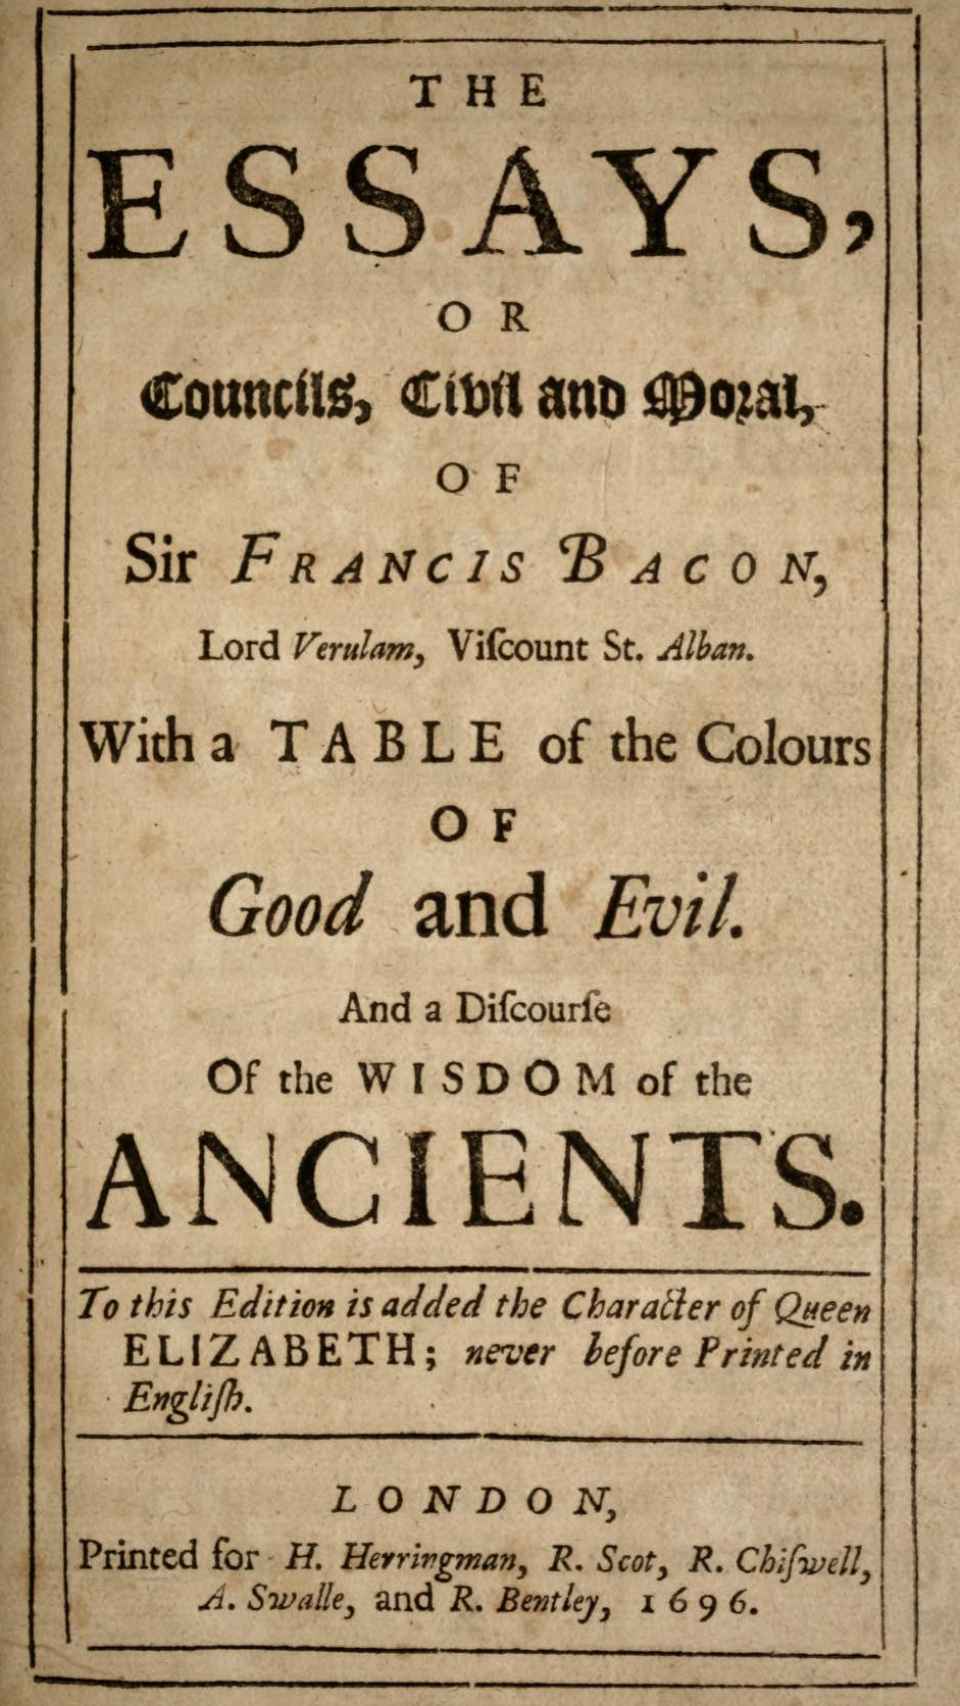 Edición de los 'Essays' de 1696